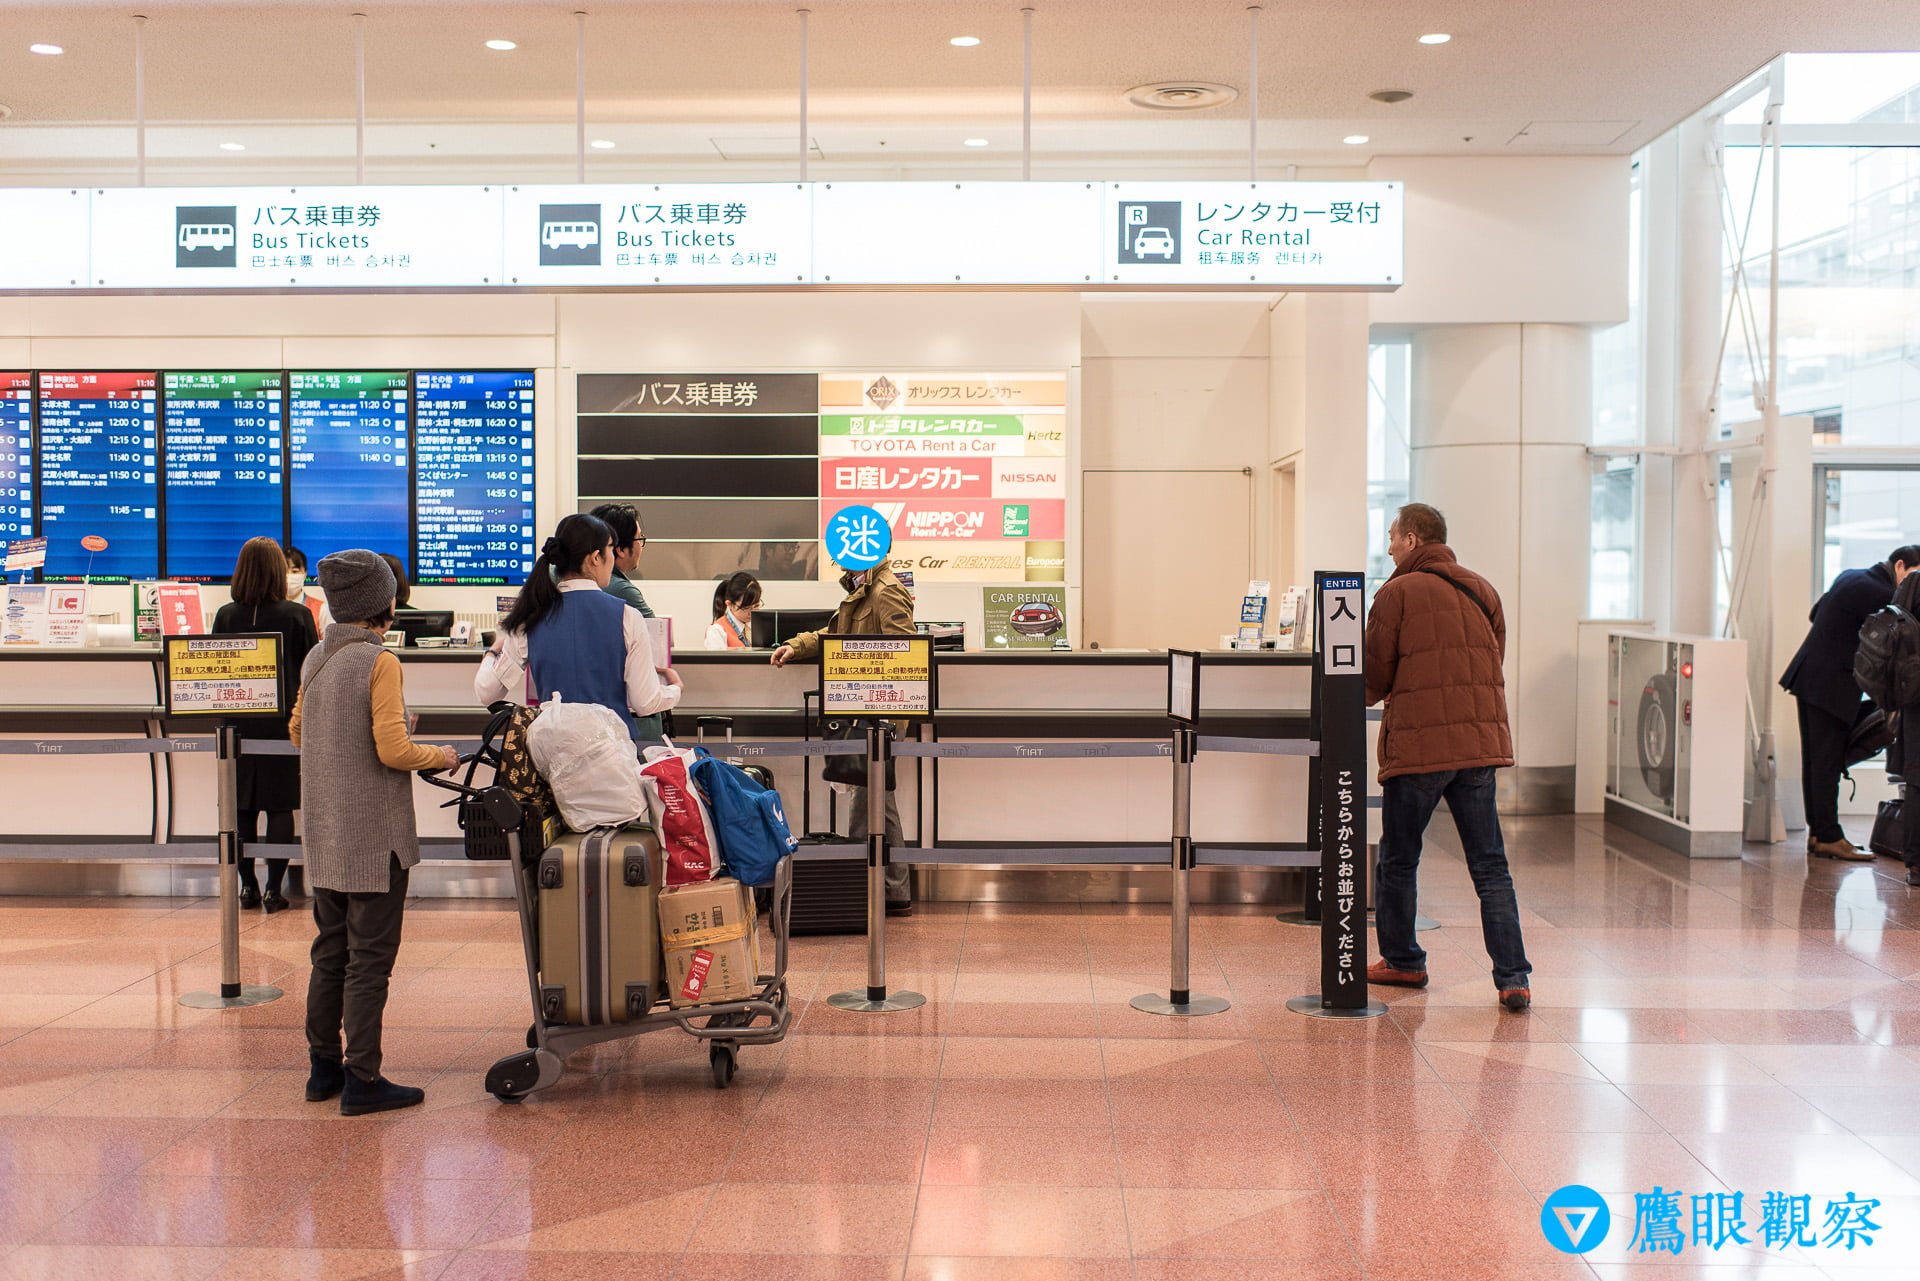 日本租車：從東京機場自駕暢遊北關東 3 縣的旅遊行程預定、租取還車教學